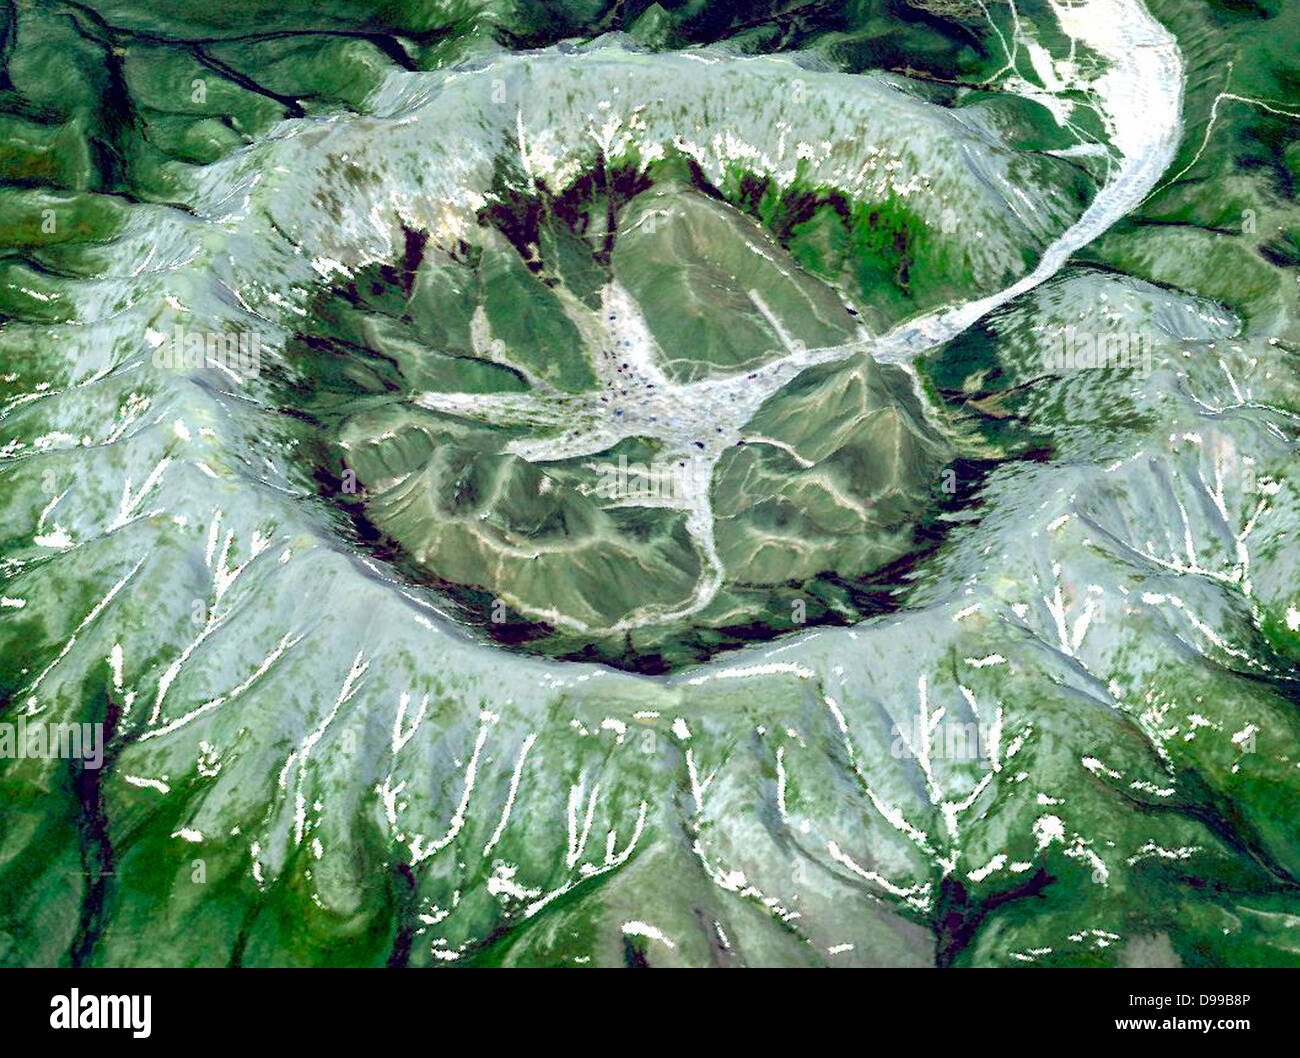 Kondyor Massiv, im östlichen Sibirien, Russland, nördlich der Stadt Chabarowsk. Es ist eine seltene Form von magmatischen Intrusion namens Alkaline - Ultrabasischen massiv. Juni 10, 2006. Satellitenbild. Stockfoto